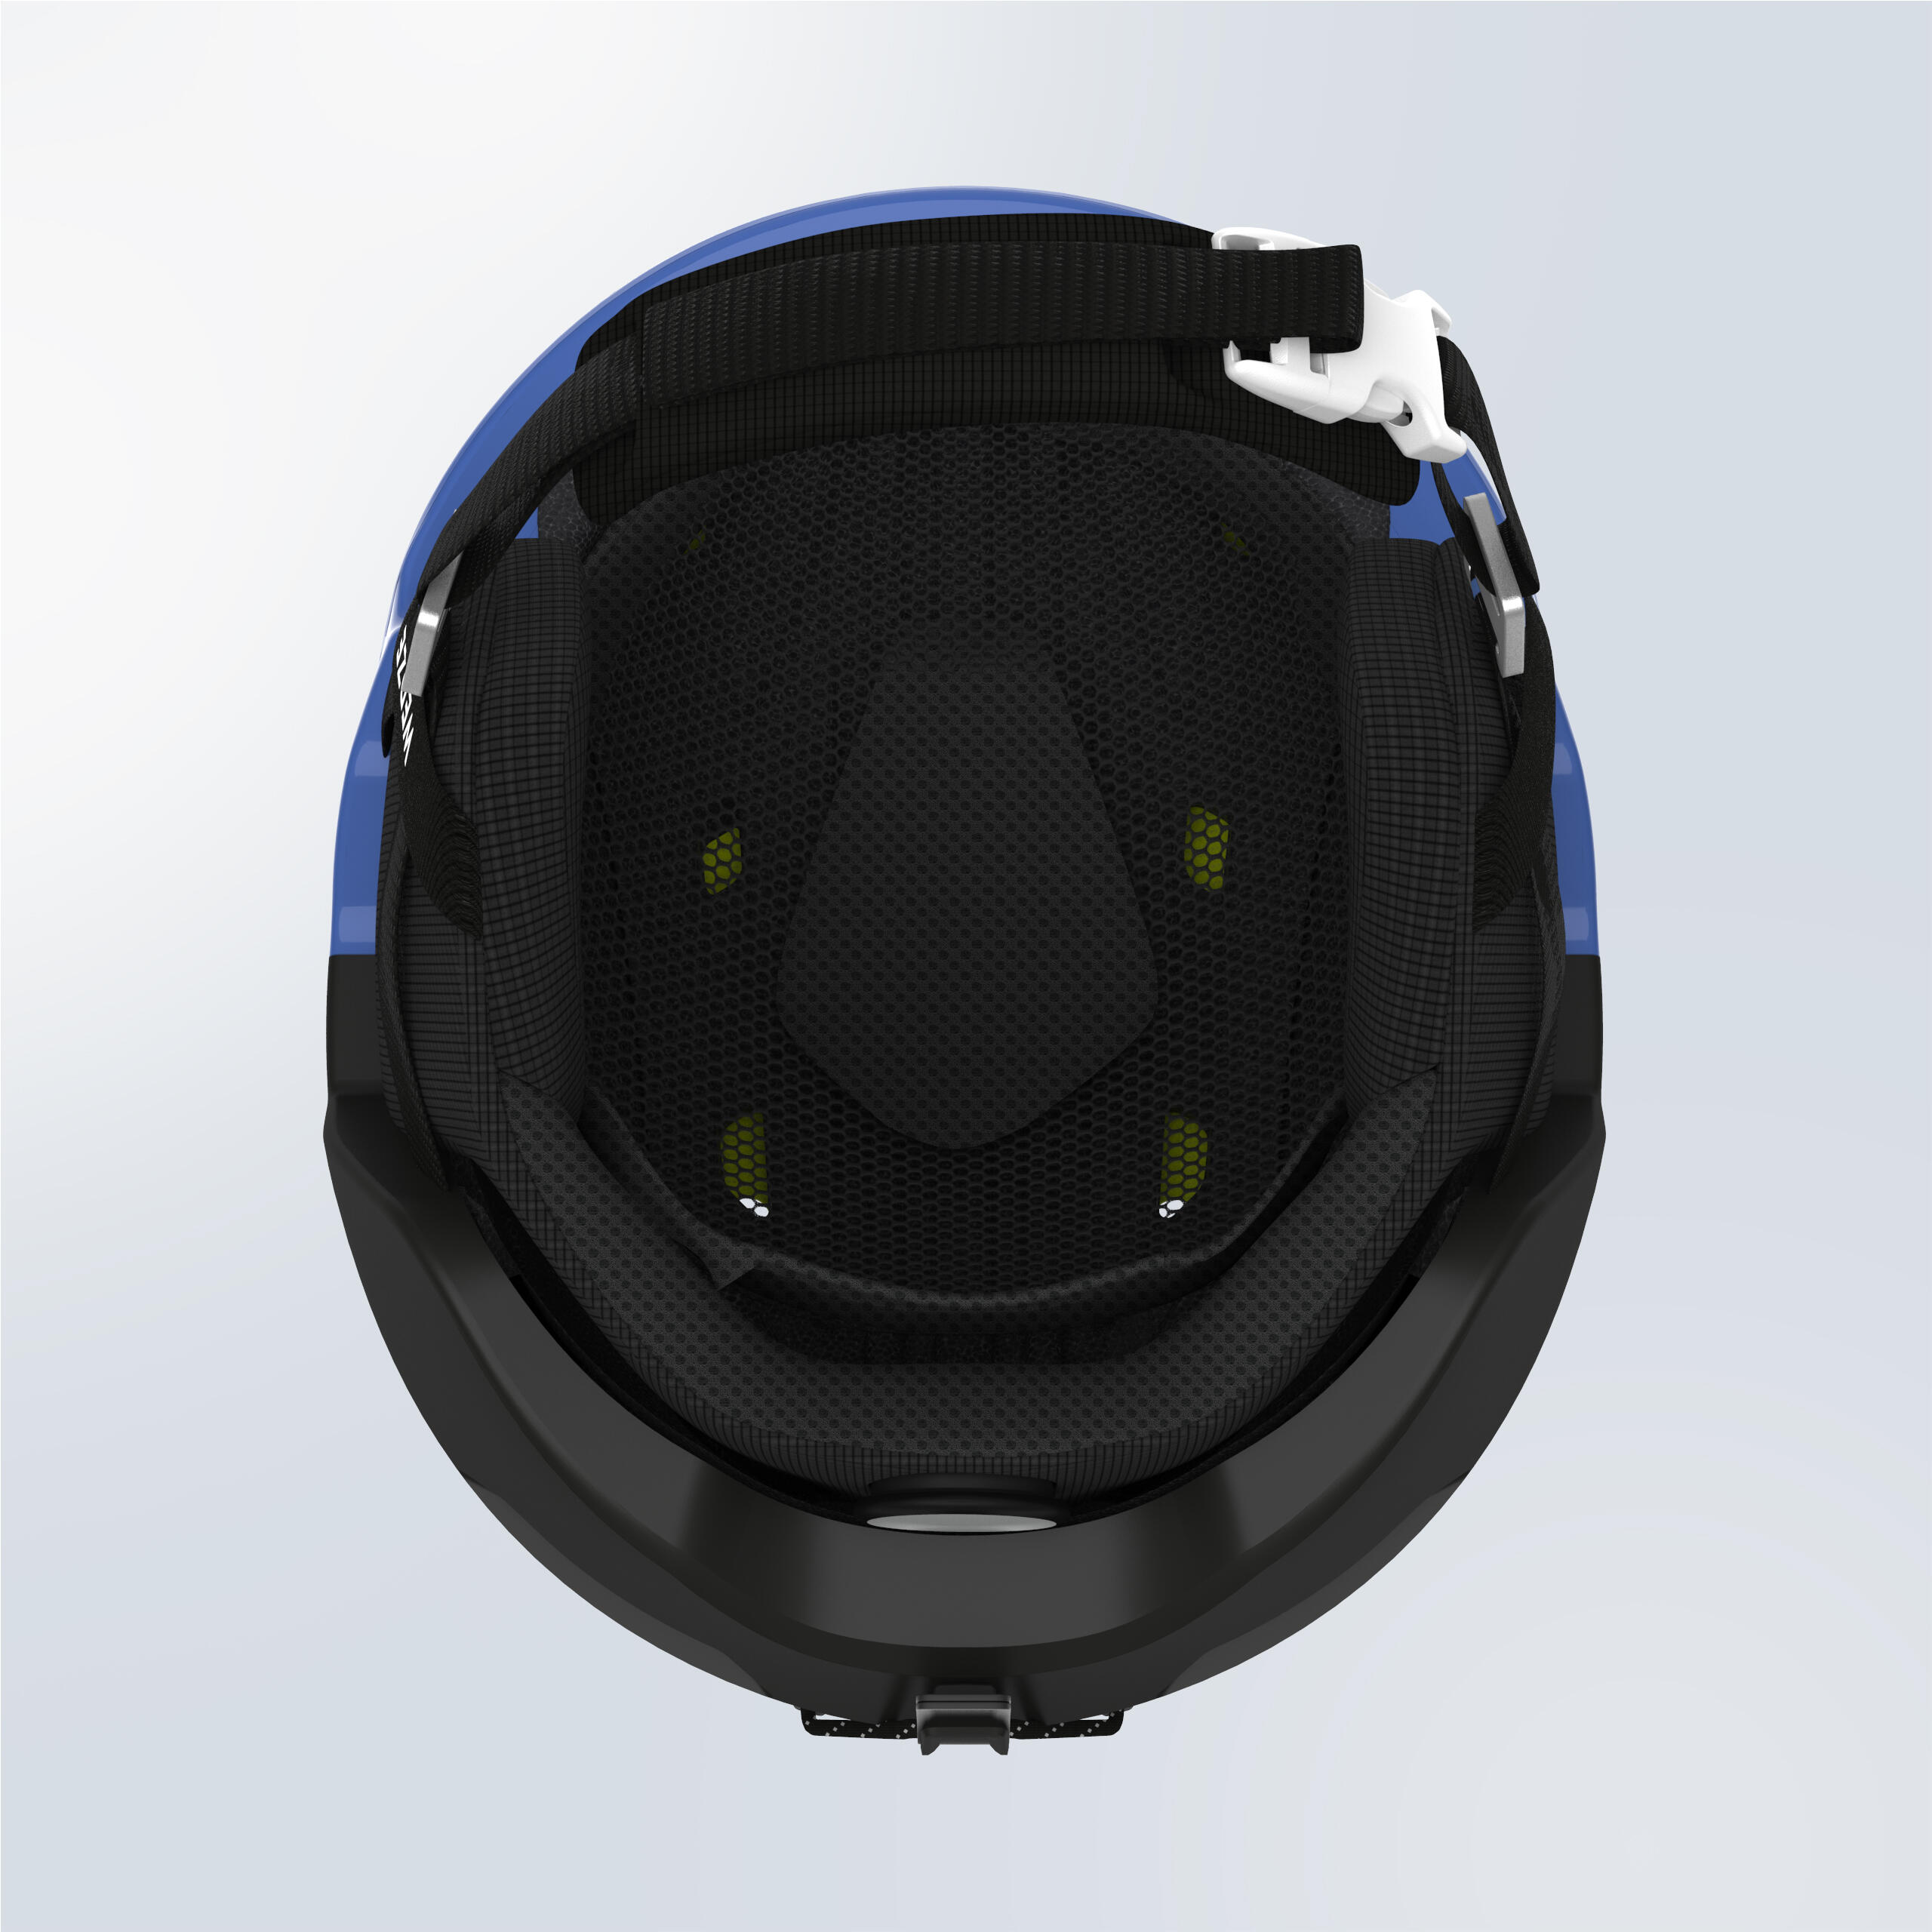 Adult ski helmet - PST 580 - Blue and black 5/7